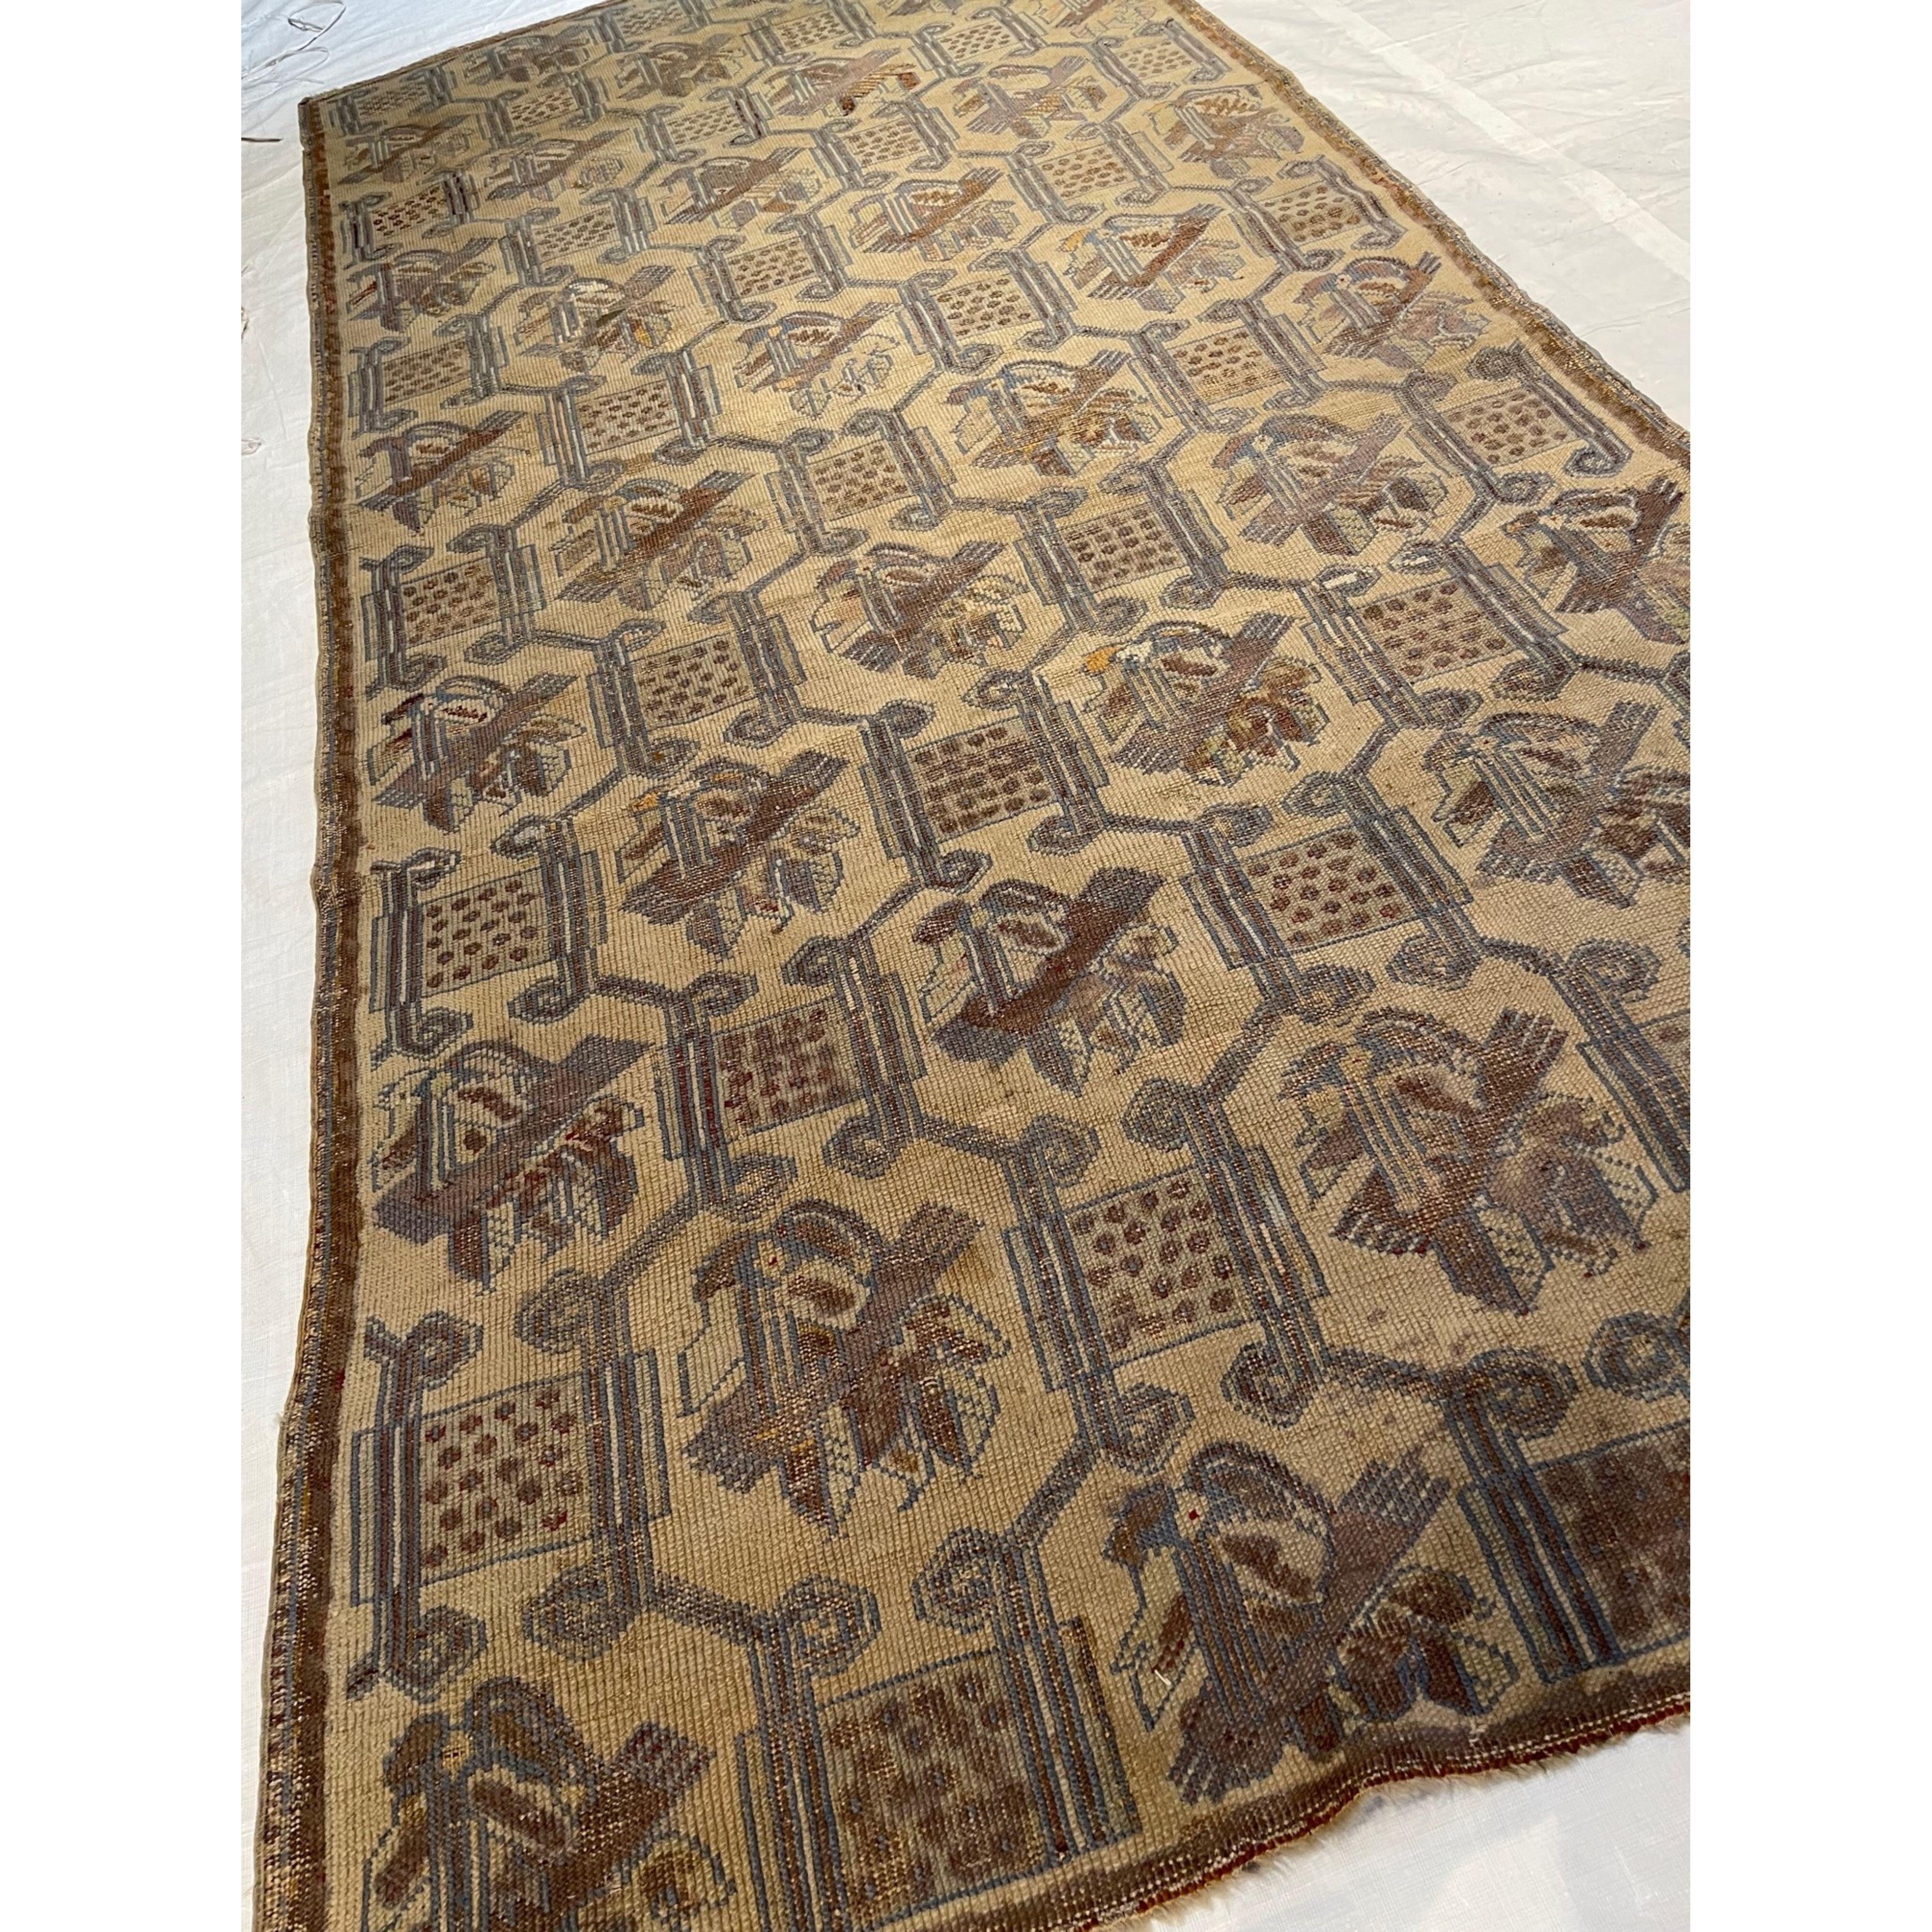 Antike indische Teppiche - Nicht alle Teppiche, die in Indien gewebt wurden, sind leicht zu kategorisieren. Aus diesem Grund haben wir diese Rubrik für antike indische Teppiche eingerichtet. Hier finden Sie indische Teppiche, bei denen die